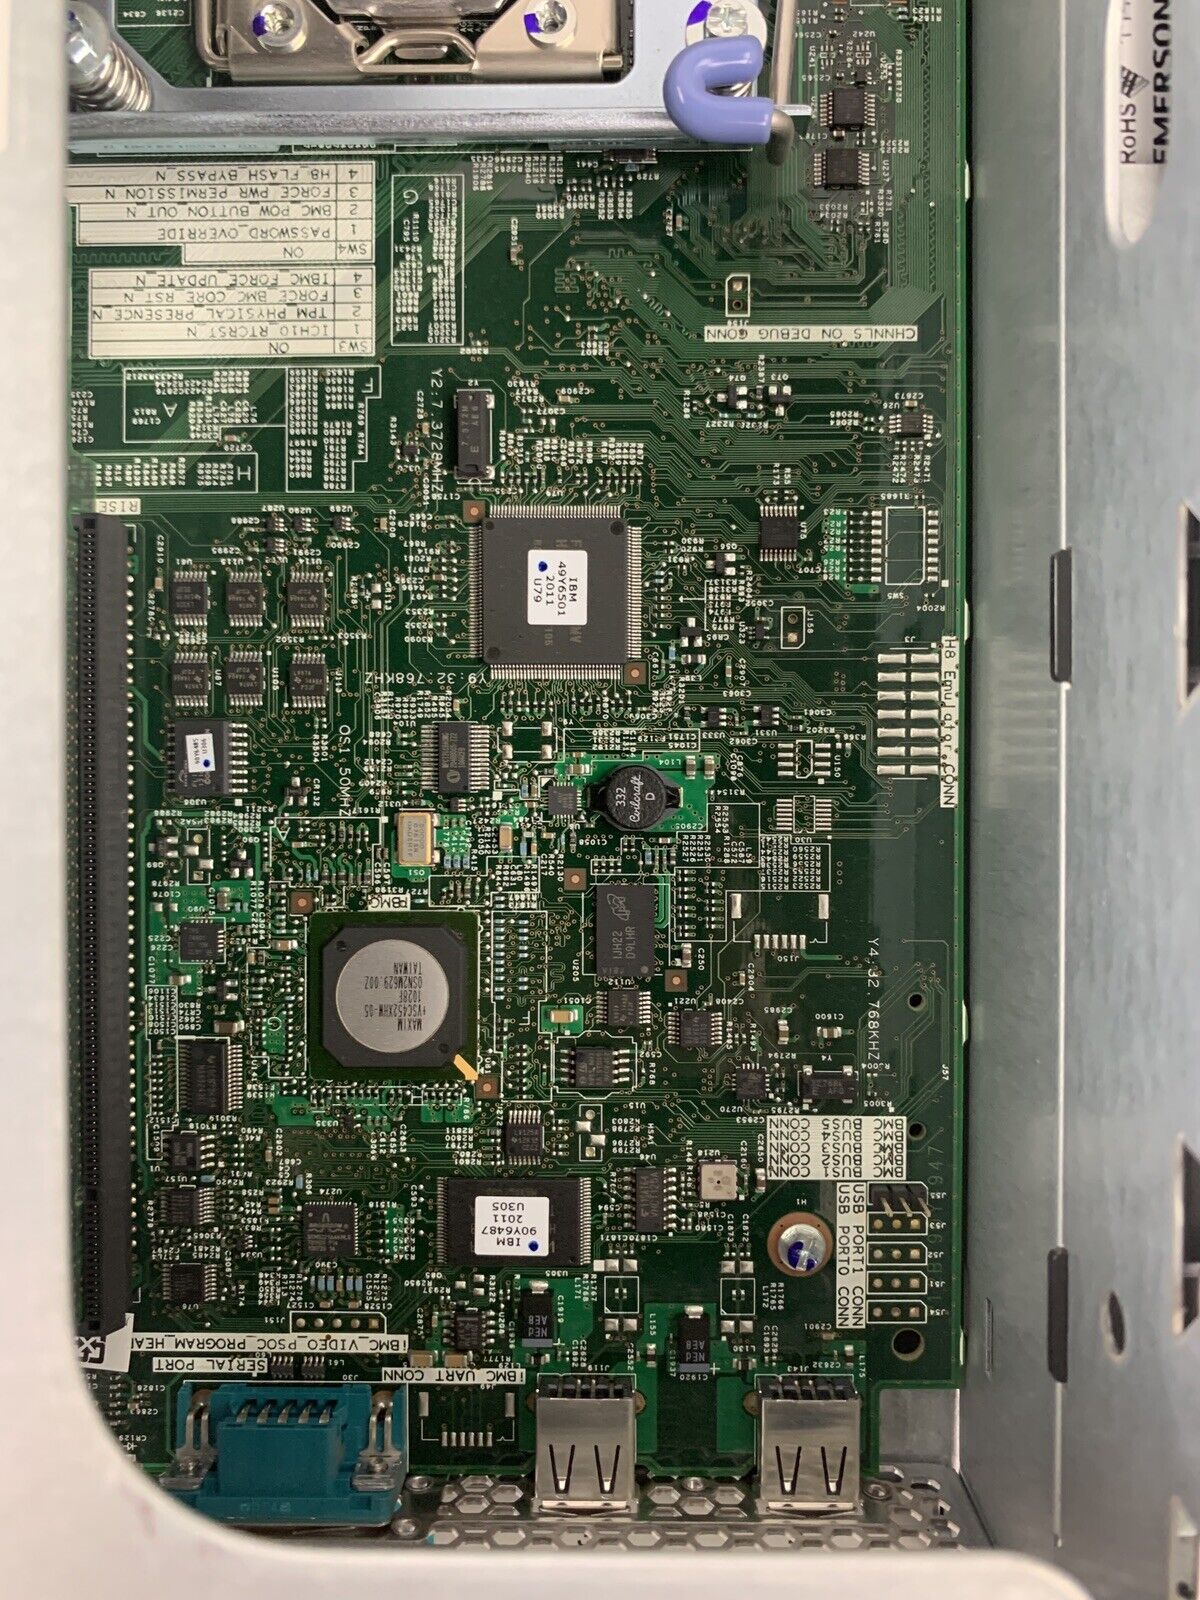 IBM System X3650 M3 Intel Server Xeon X5650 2.67 GHz 12 GB RAM No HDD No OS